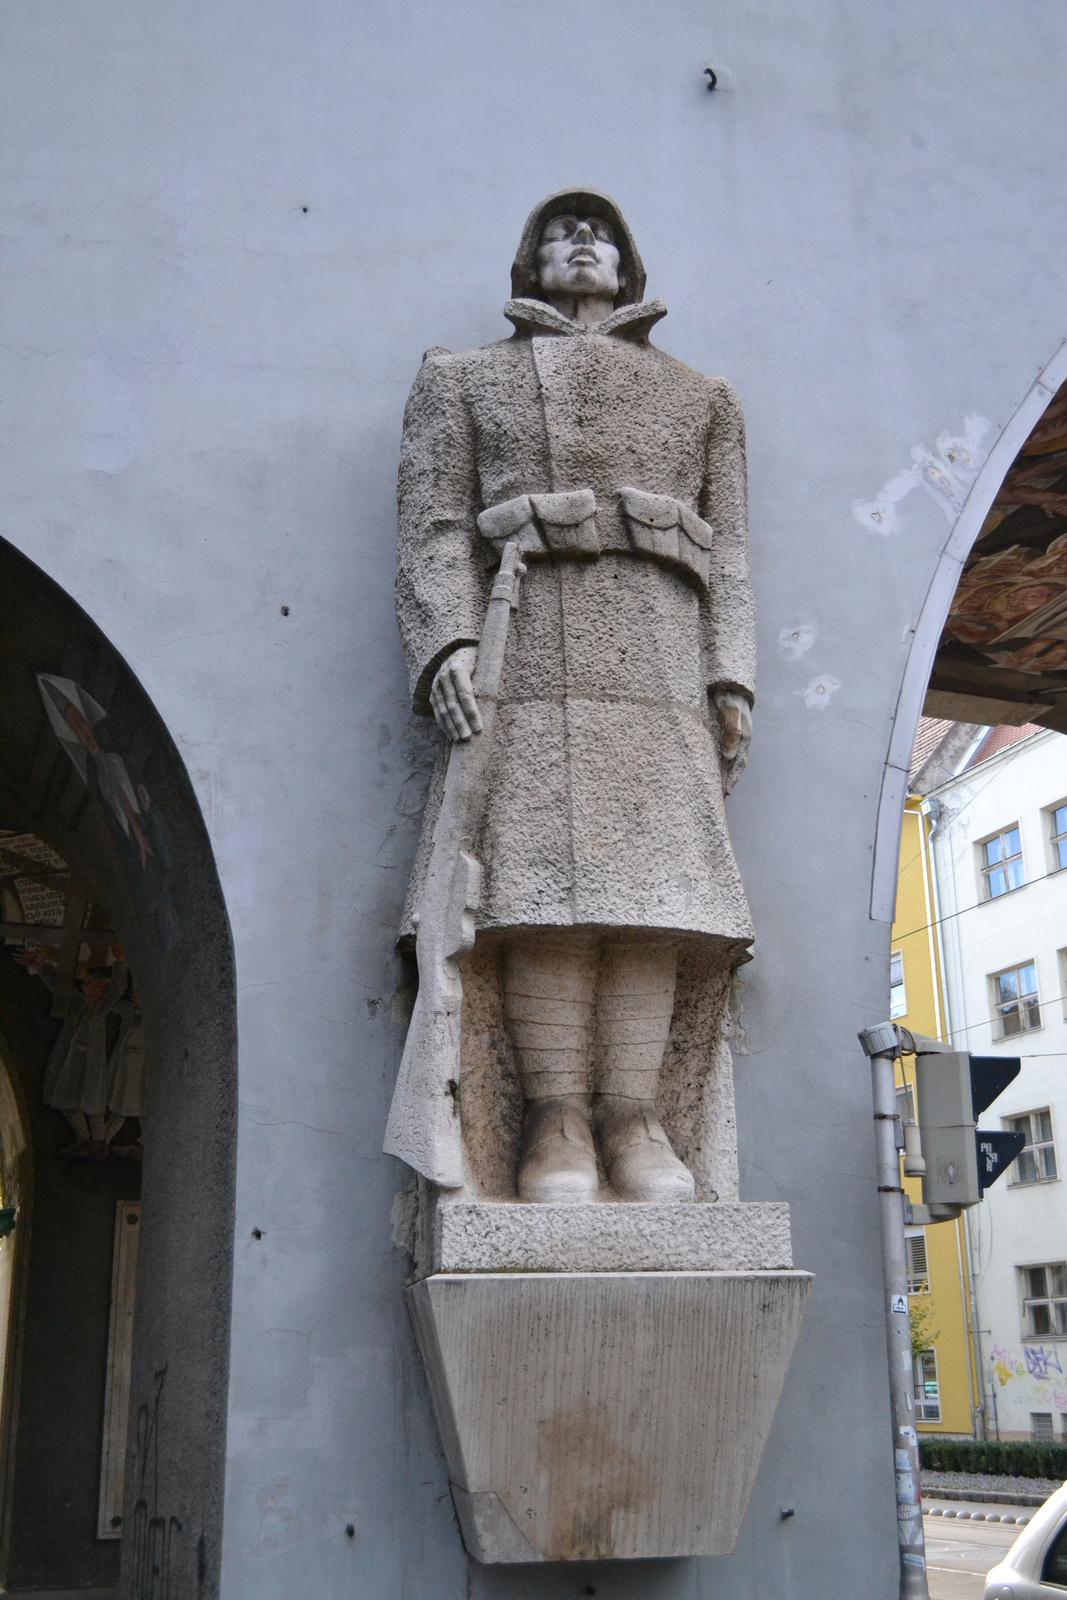 Szeged - hősök kapuja védő szobor